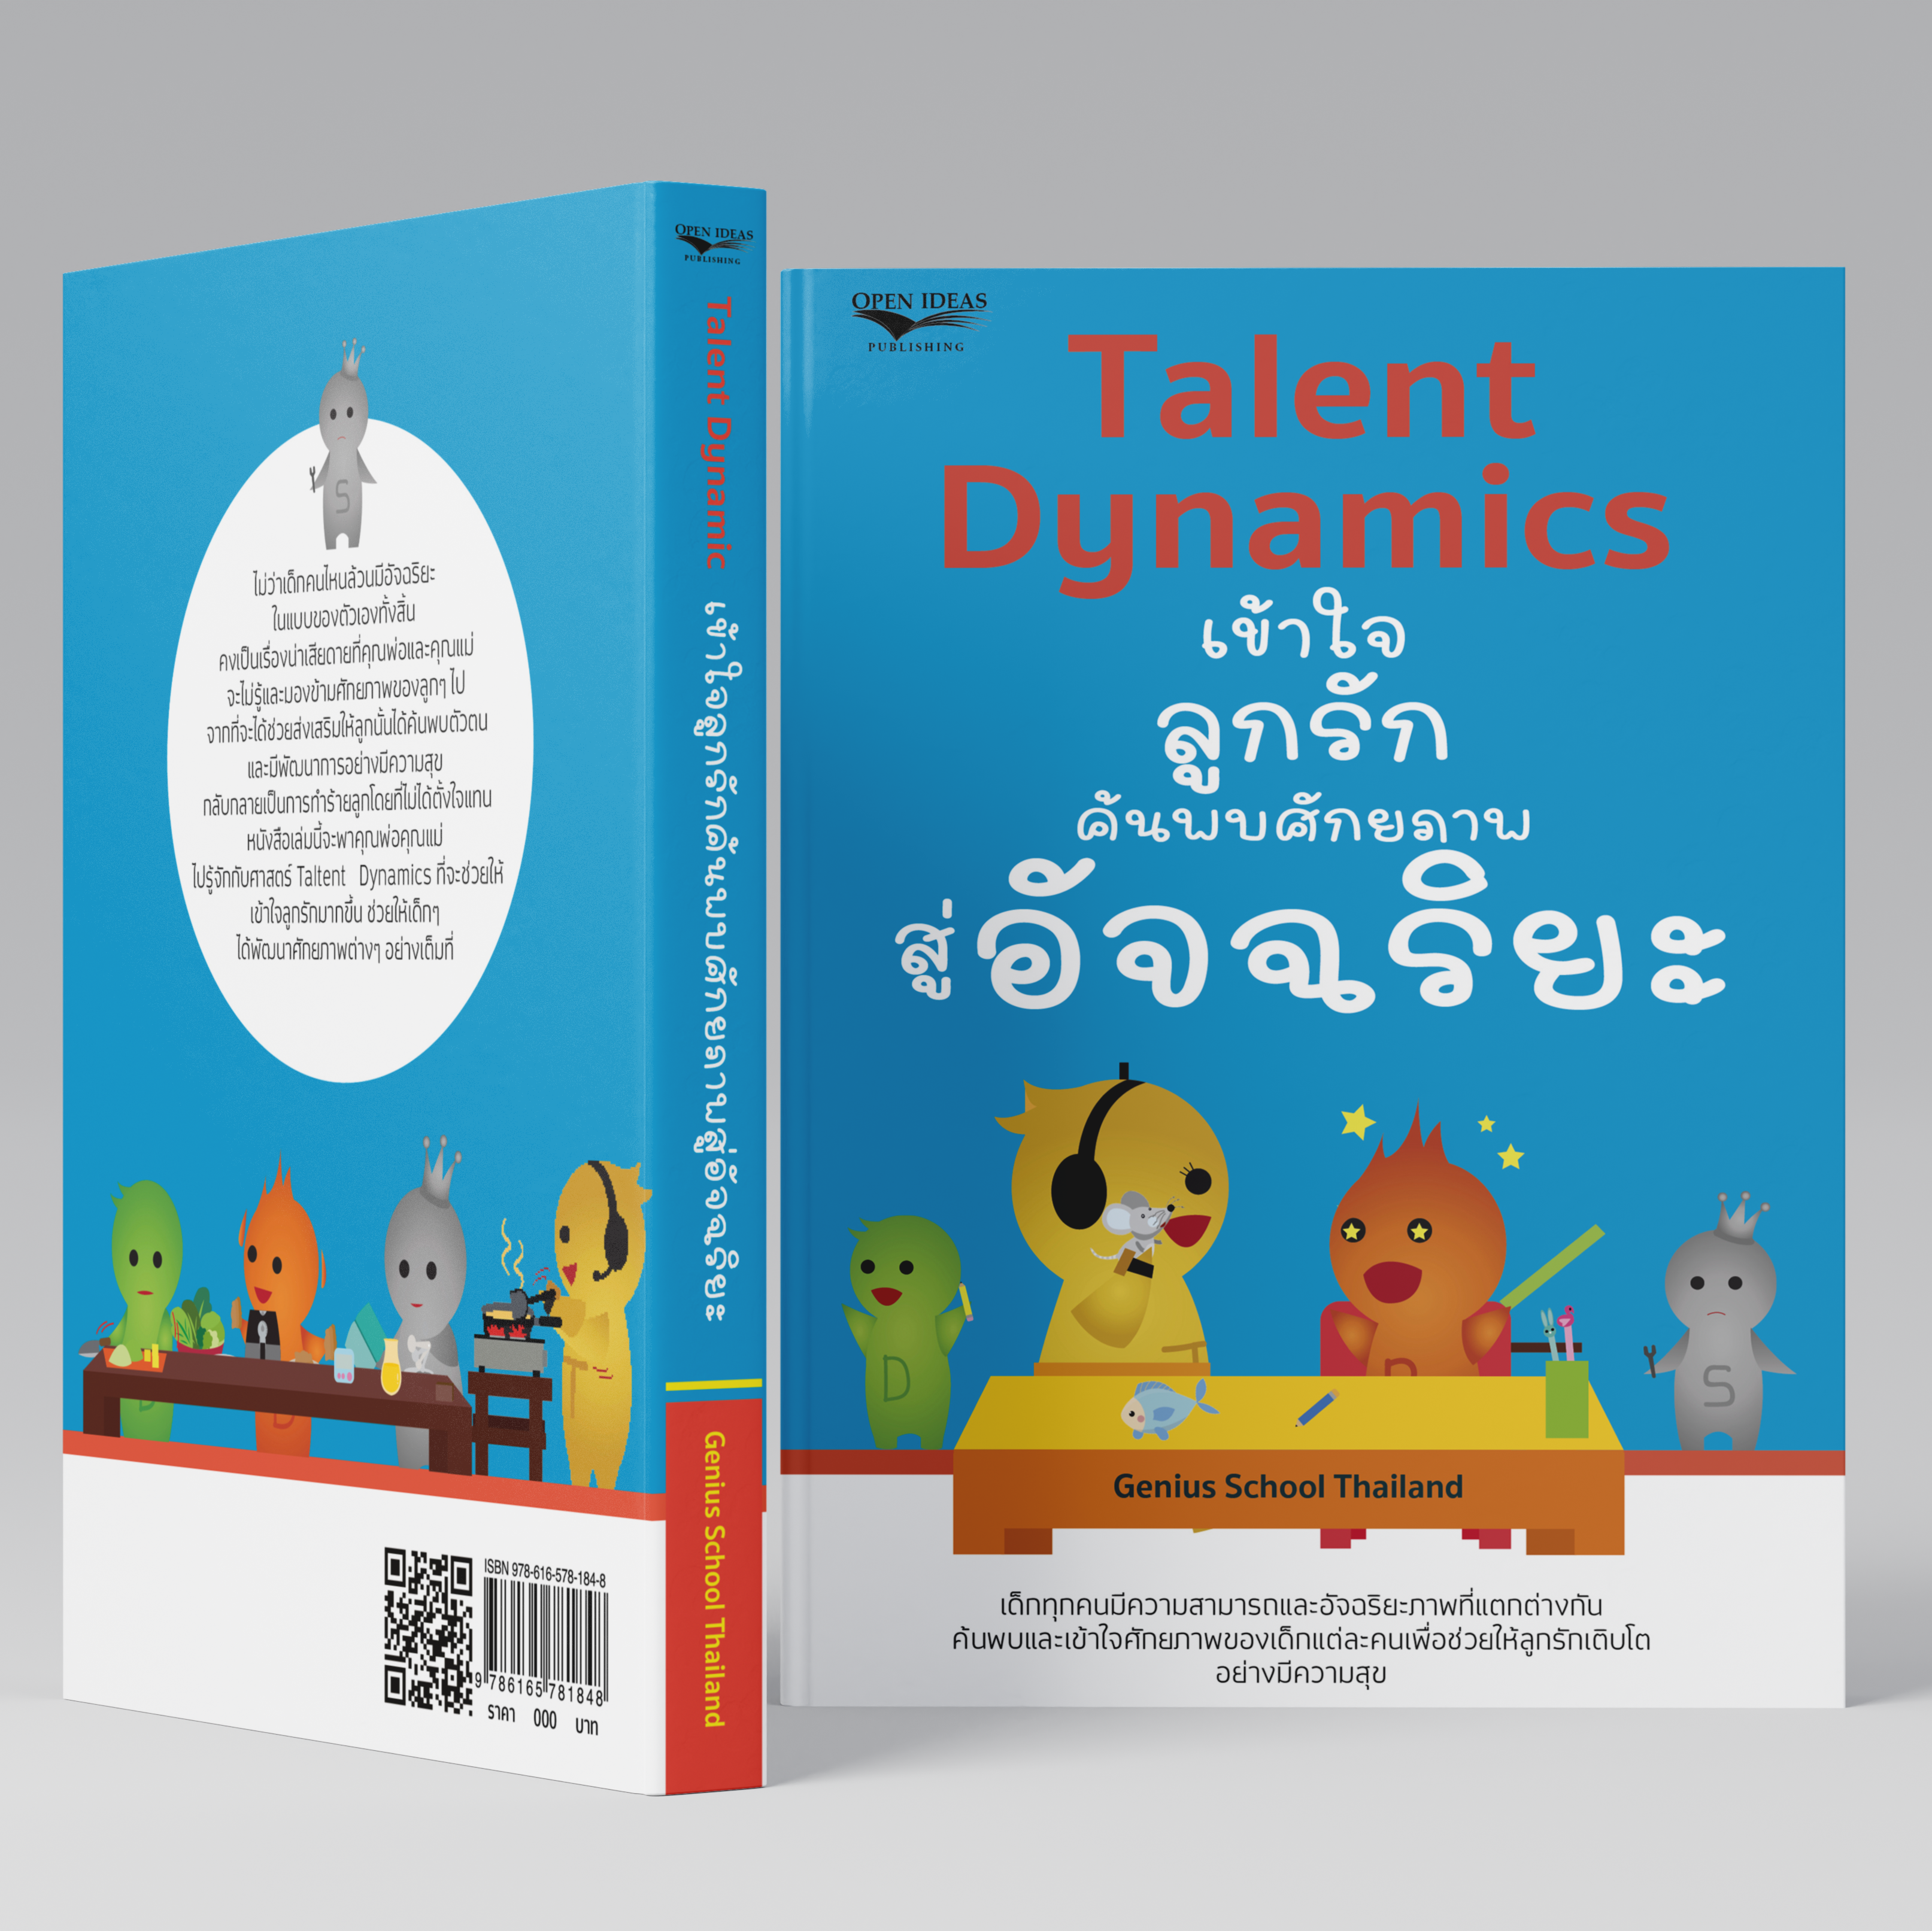 <h1>หนังสือใหม่ของเรา เพื่อให้คนไทยได้รู้จักตัวเอง</h1>